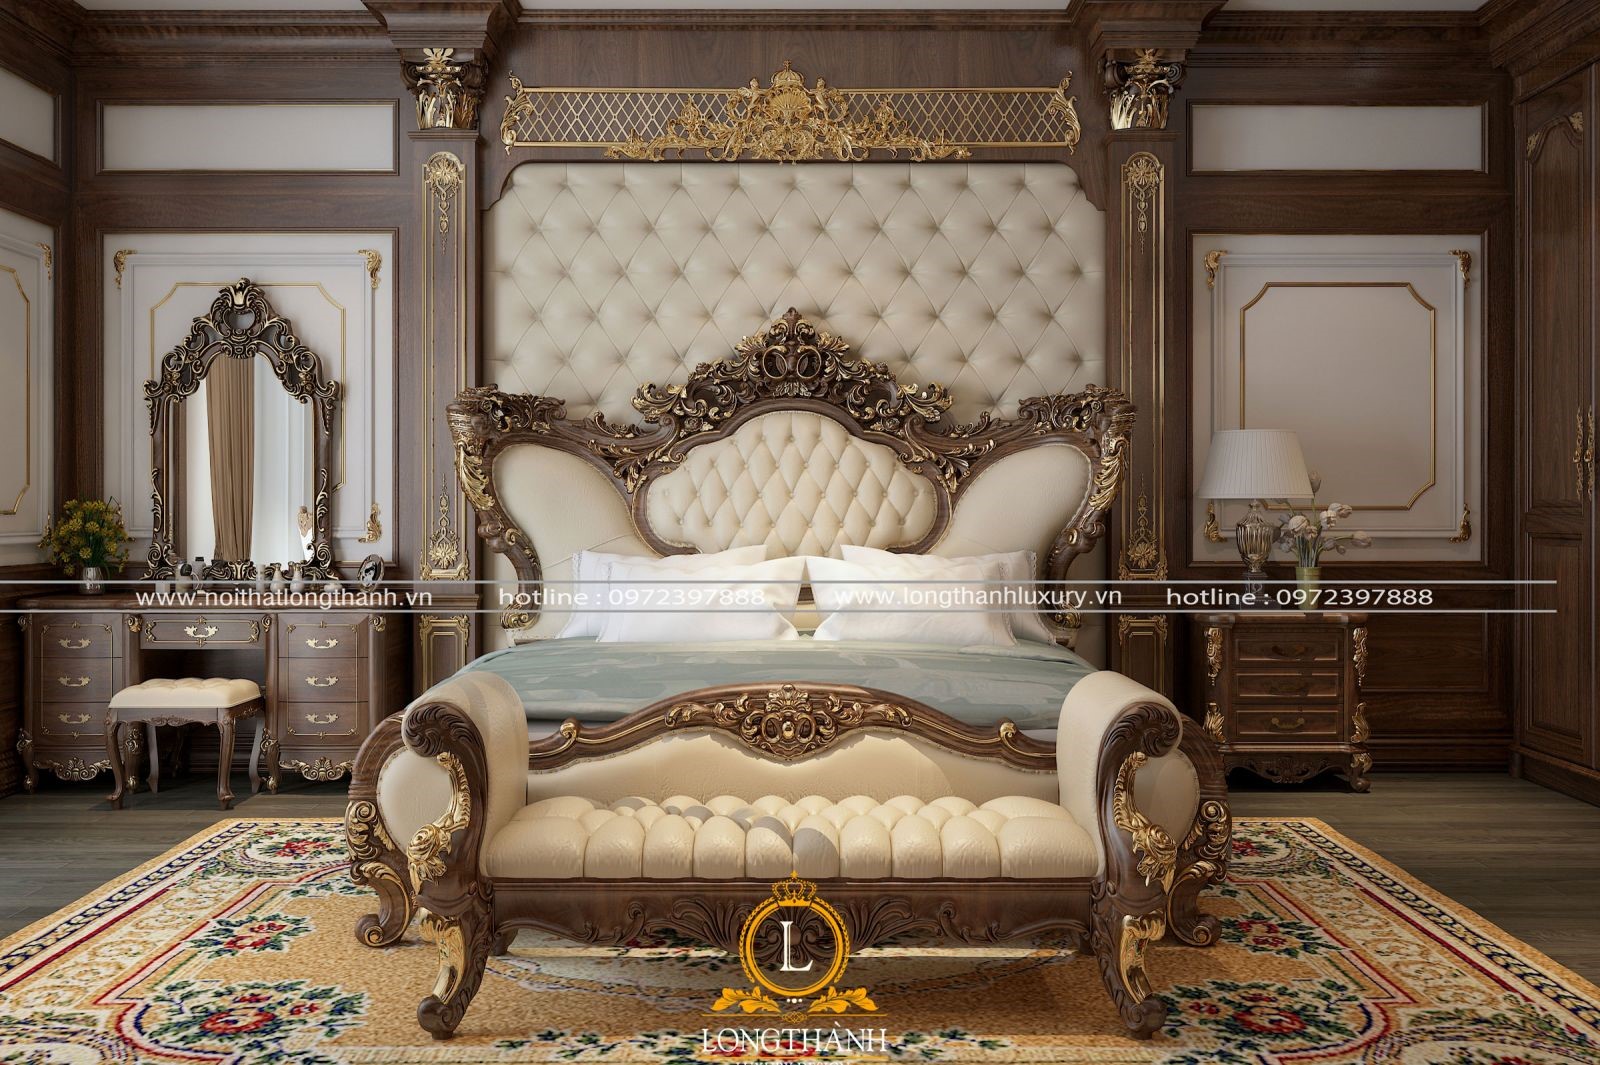 Thiết kế phòng ngủ cổ điển sử dụng chất liệu gỗ tự nhiên mạ vàng bên ngoài